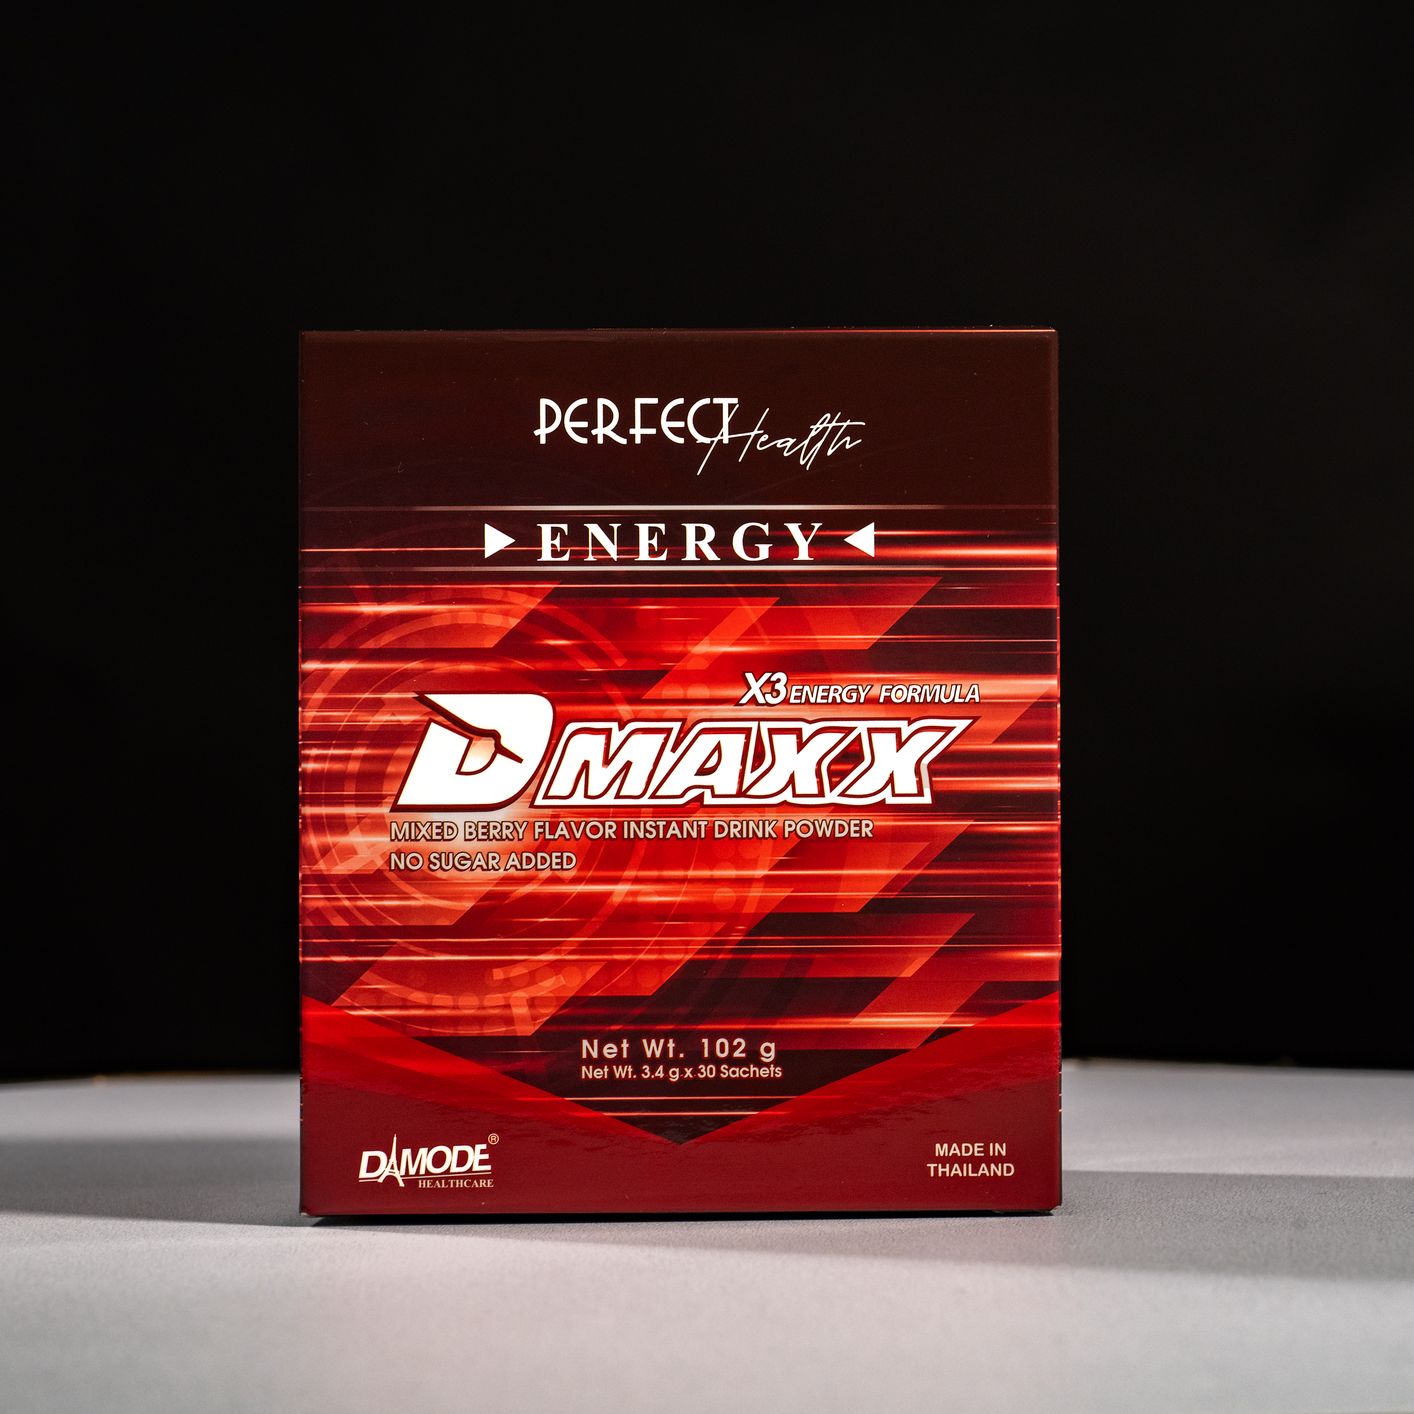 Bổ sung năng lượng hiệu quả với thức uống Dmaxx